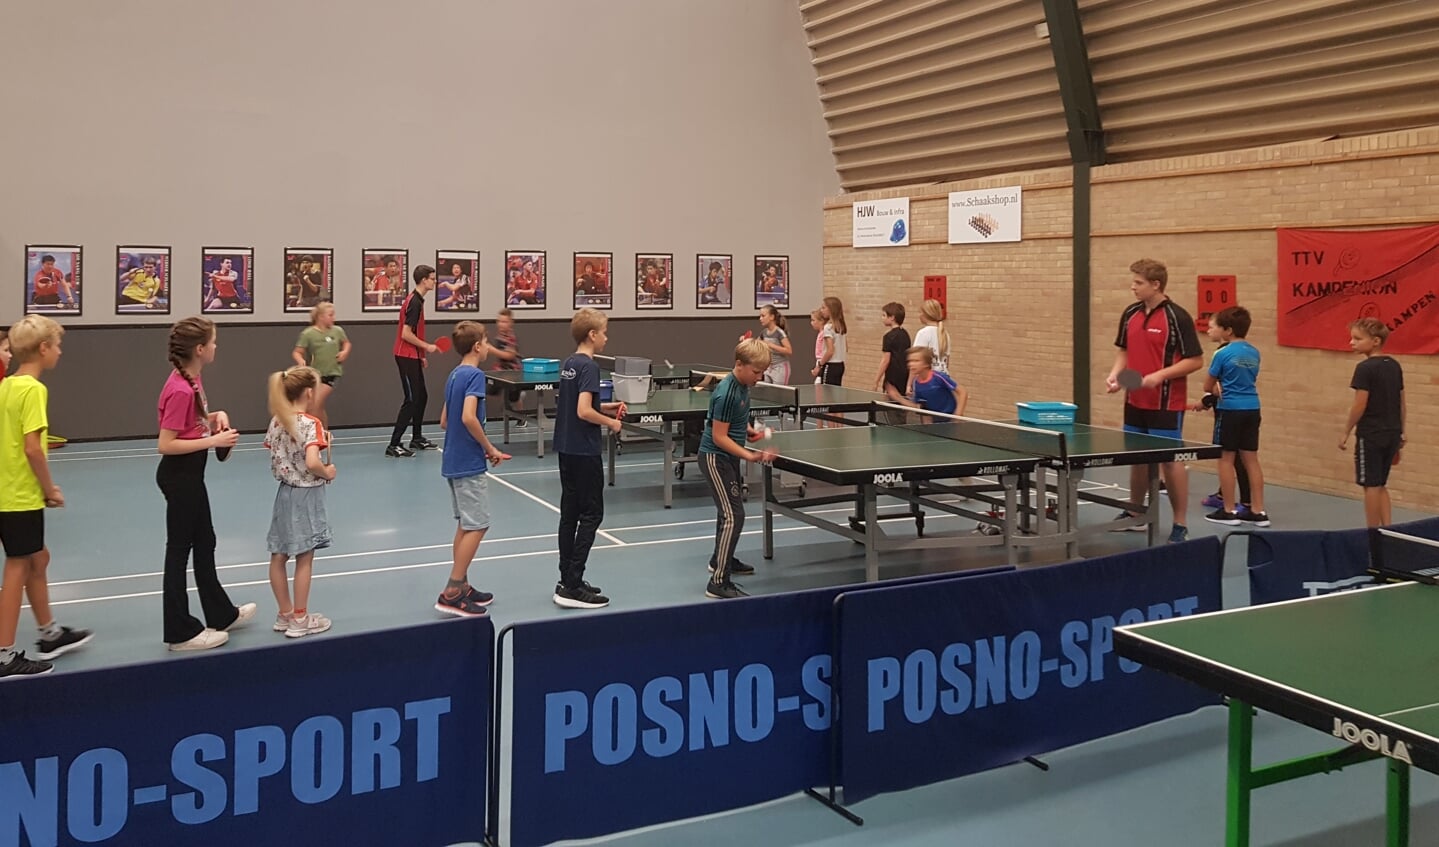 De zaal van Kampenion met 'Ping Pong Stars'